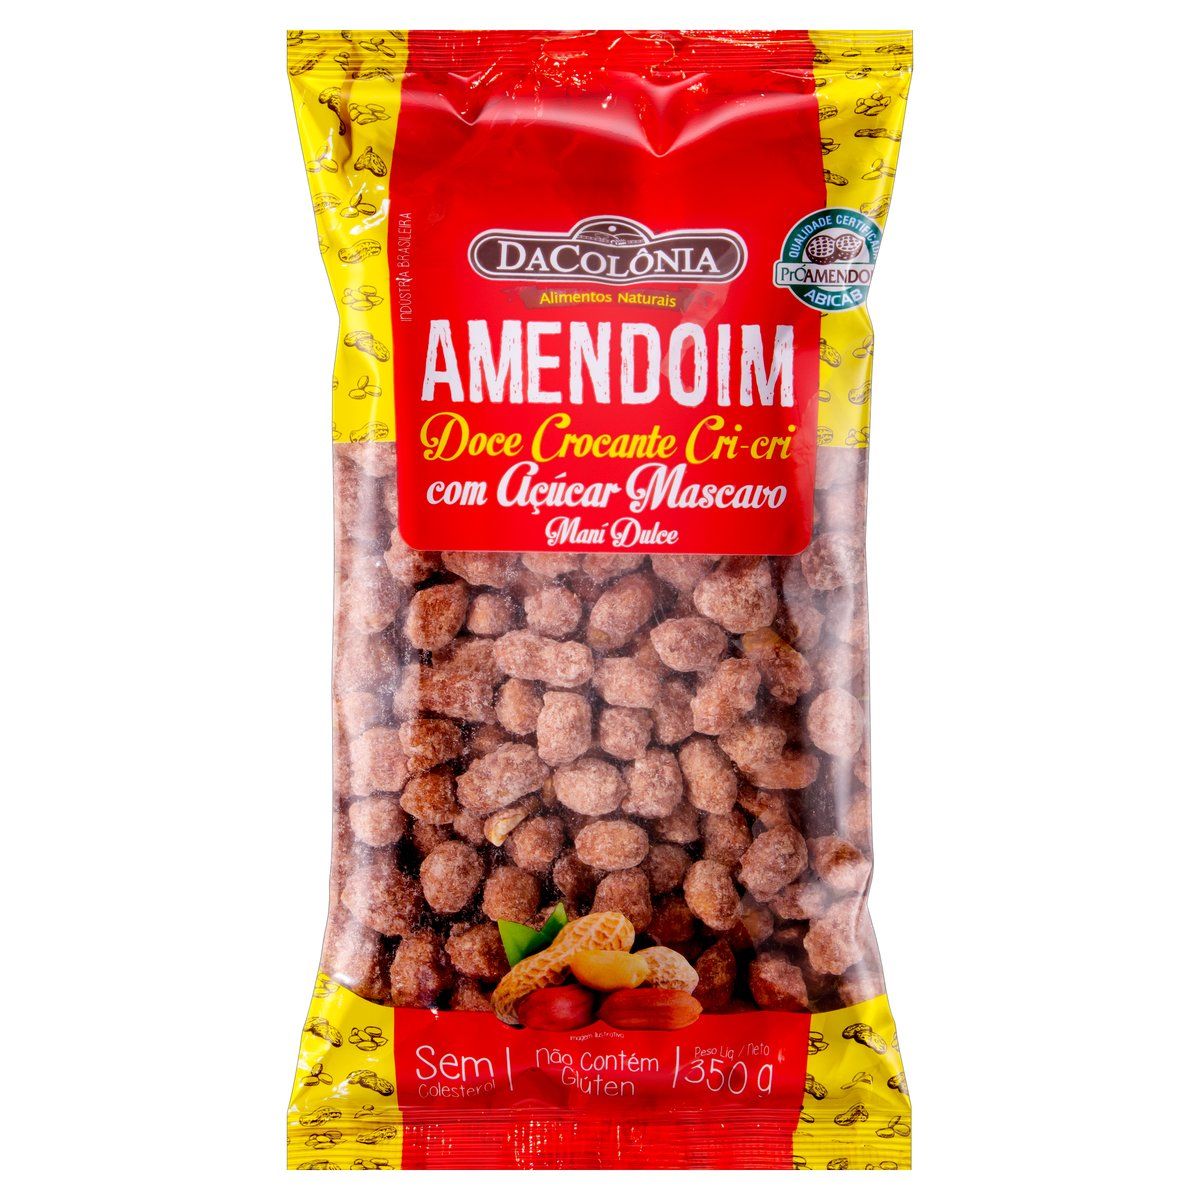 Amendoim Cri-Cri Crocante com Açúcar Mascavo DaColônia Pacote 350g